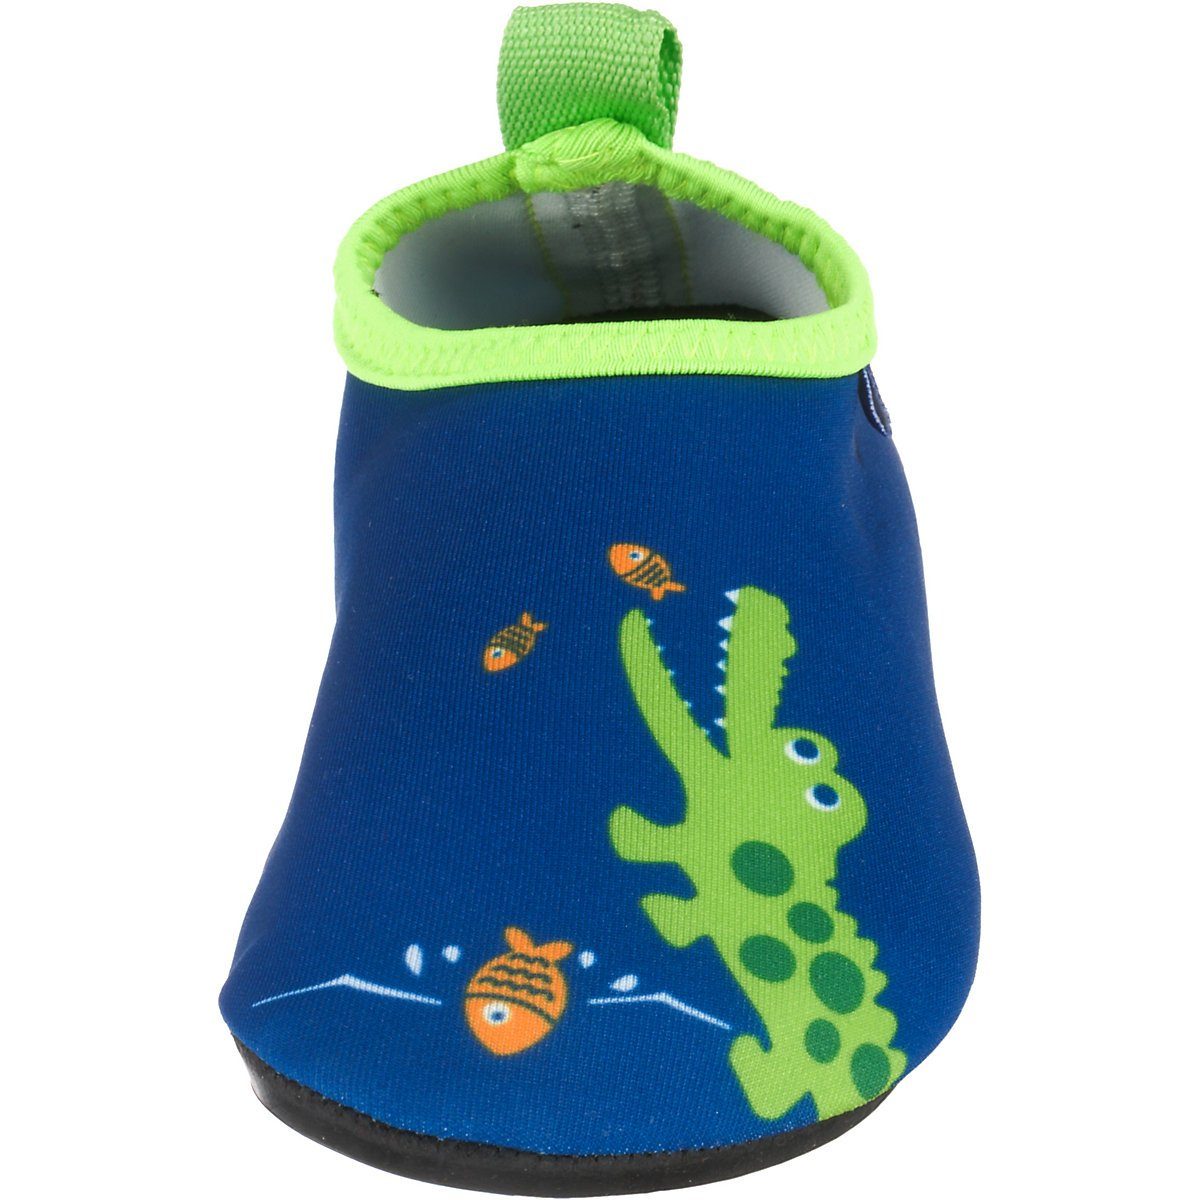 Motiv flexible Wasserschuhe Playshoes Krodkodil-blau Badeschuh Sohle Badeschuhe Passform, Barfuß-Schuh rutschhemmender Schwimmschuhe, mit